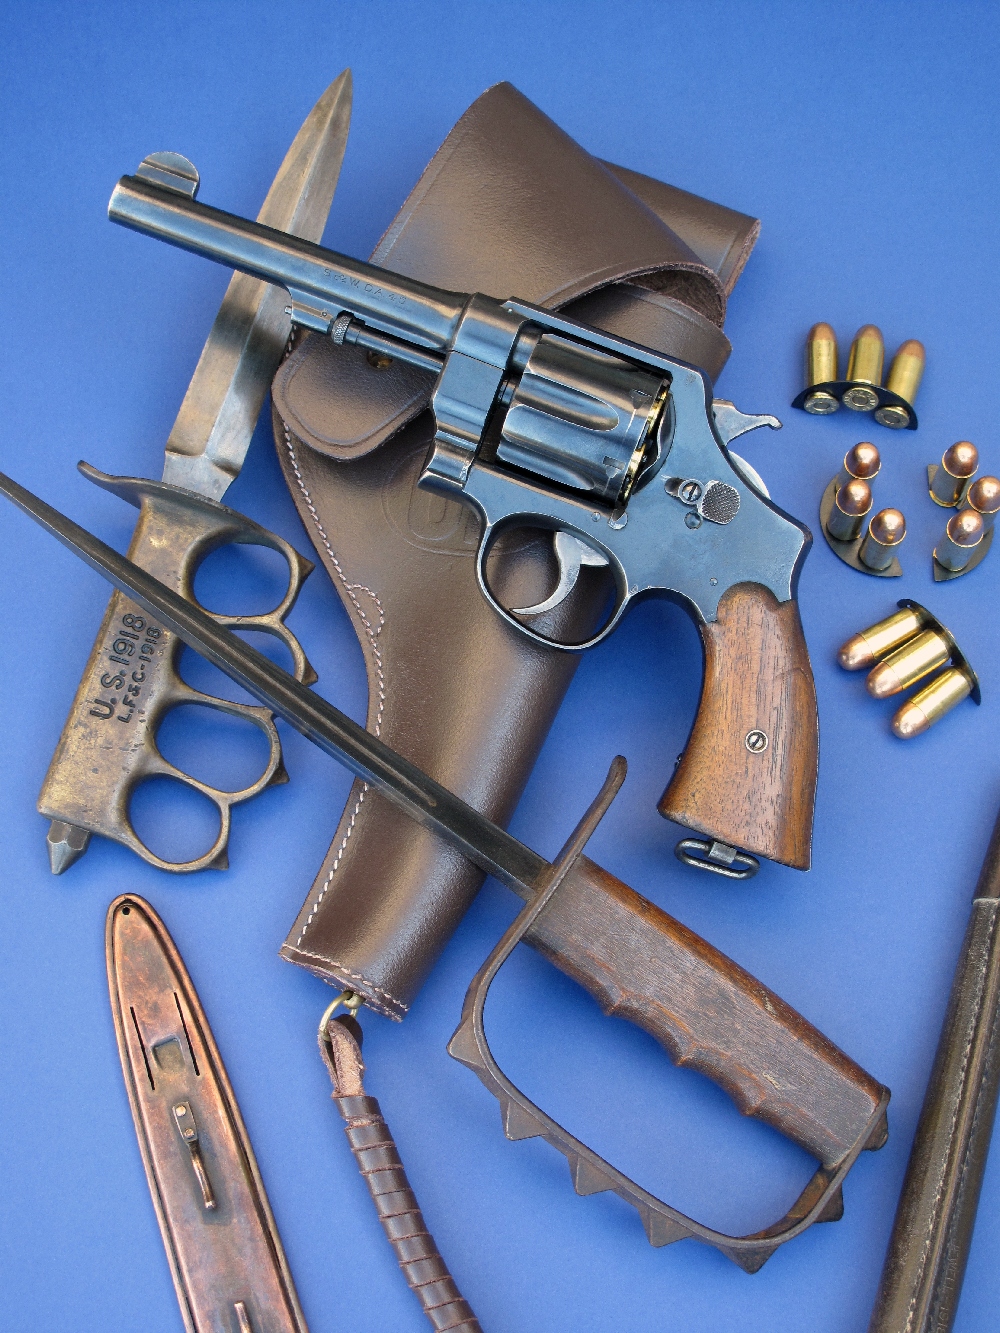 Le revolver S&W modèle 1917 que nous avons testé est accompagné ici de son holster en cuir (copie), de clips chargeurs en demi-lune (copies) garnis de cartouches modernes de calibre .45 ACP et des poignards de tranchée américains modèles 1917 et 1918 (authentiques), prêtés par la maison AAS (www.aassniper98.com).